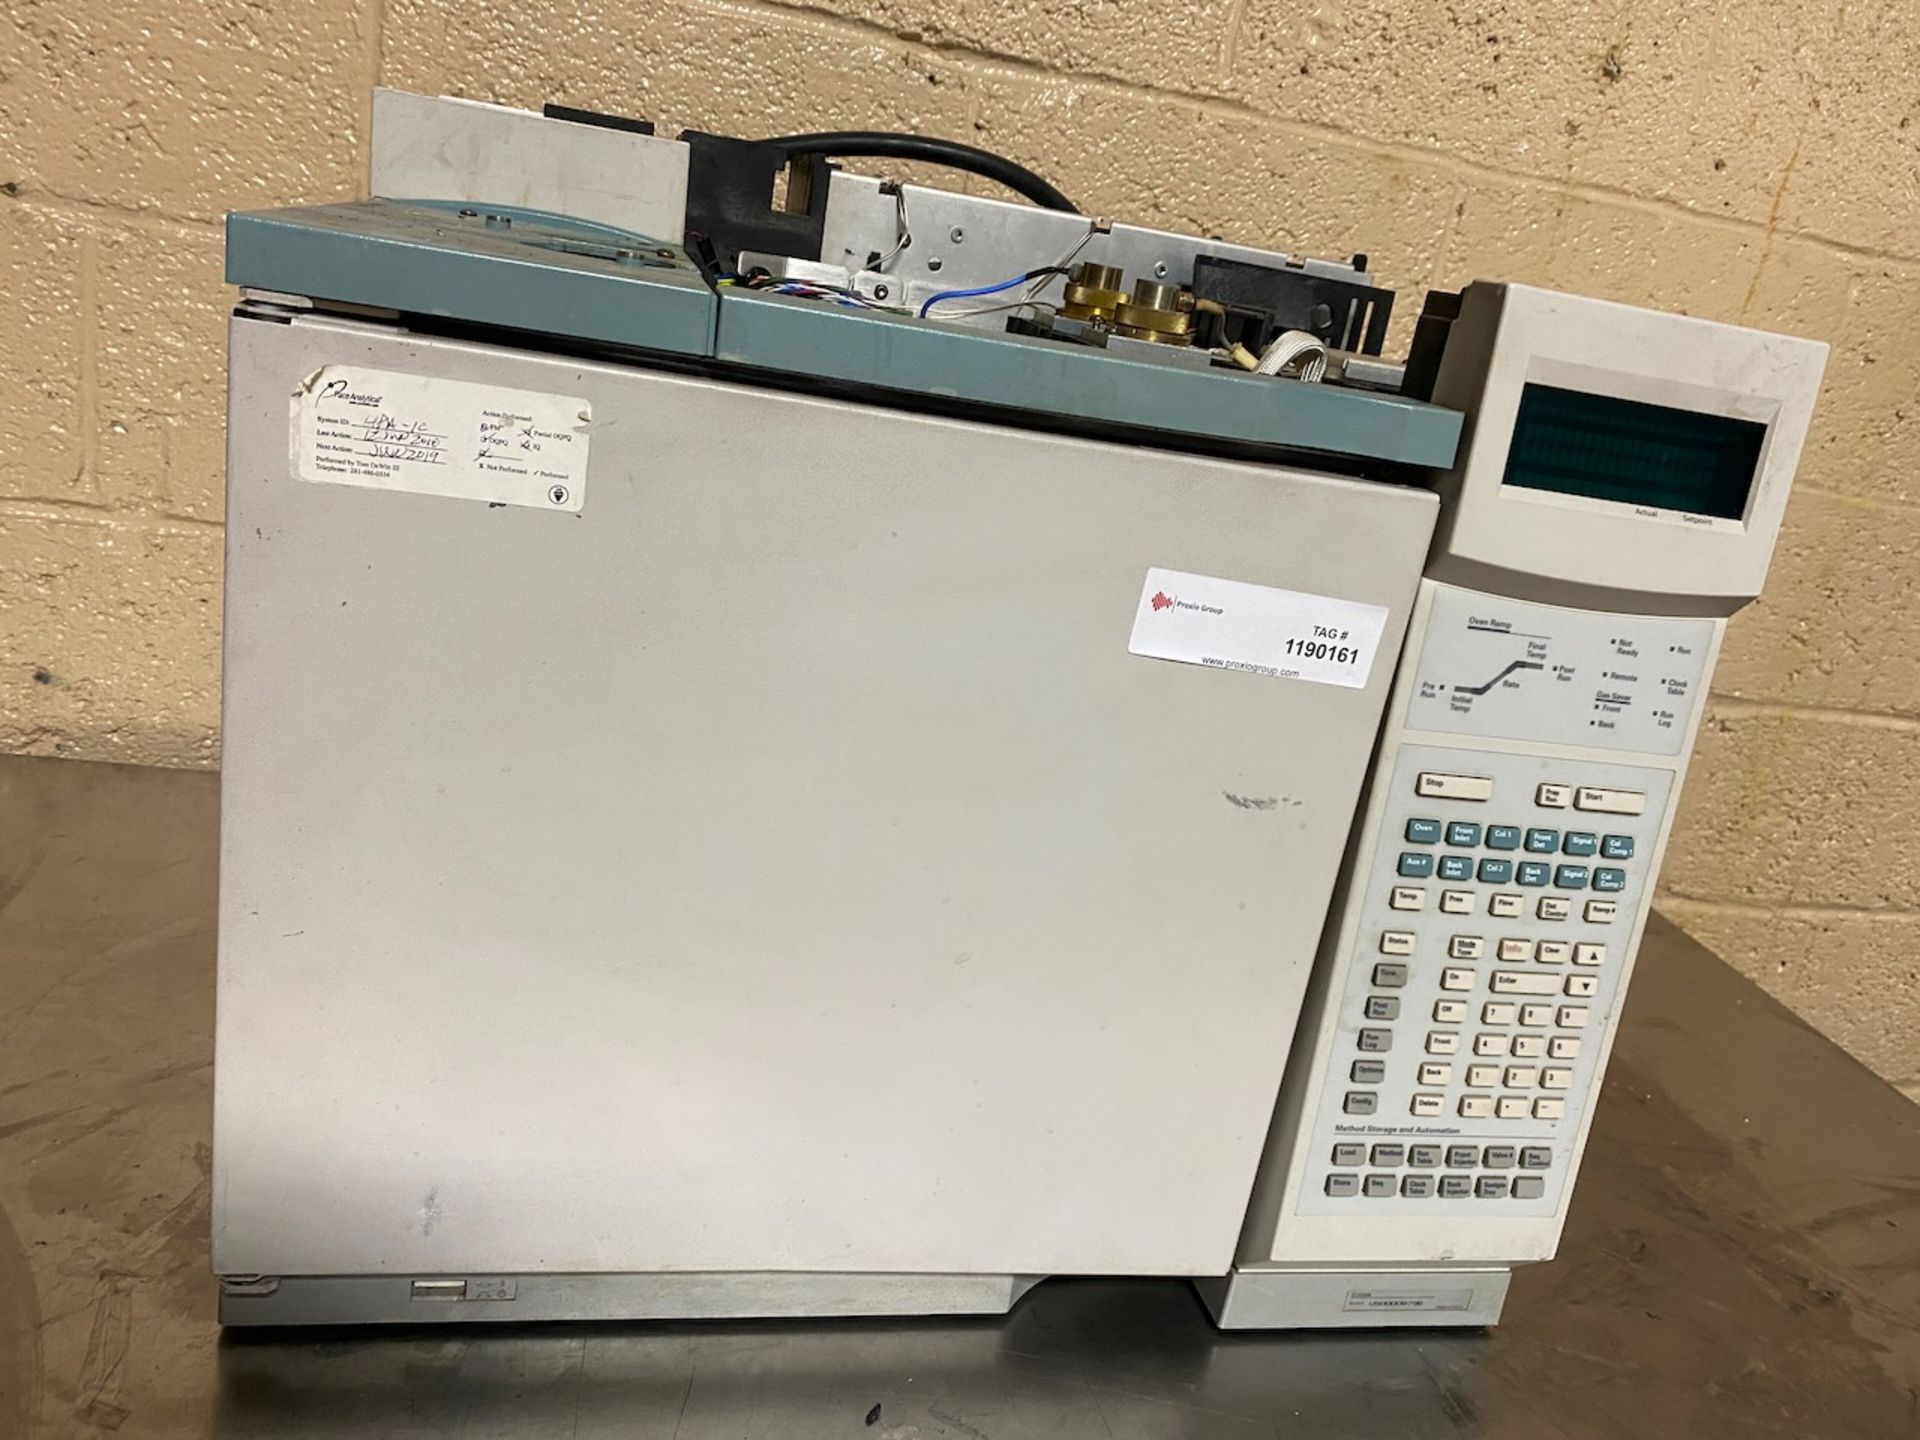 Hewlett Packard G1530A Gas Chromatograph, S/N US00008796. {TAG:1190161}